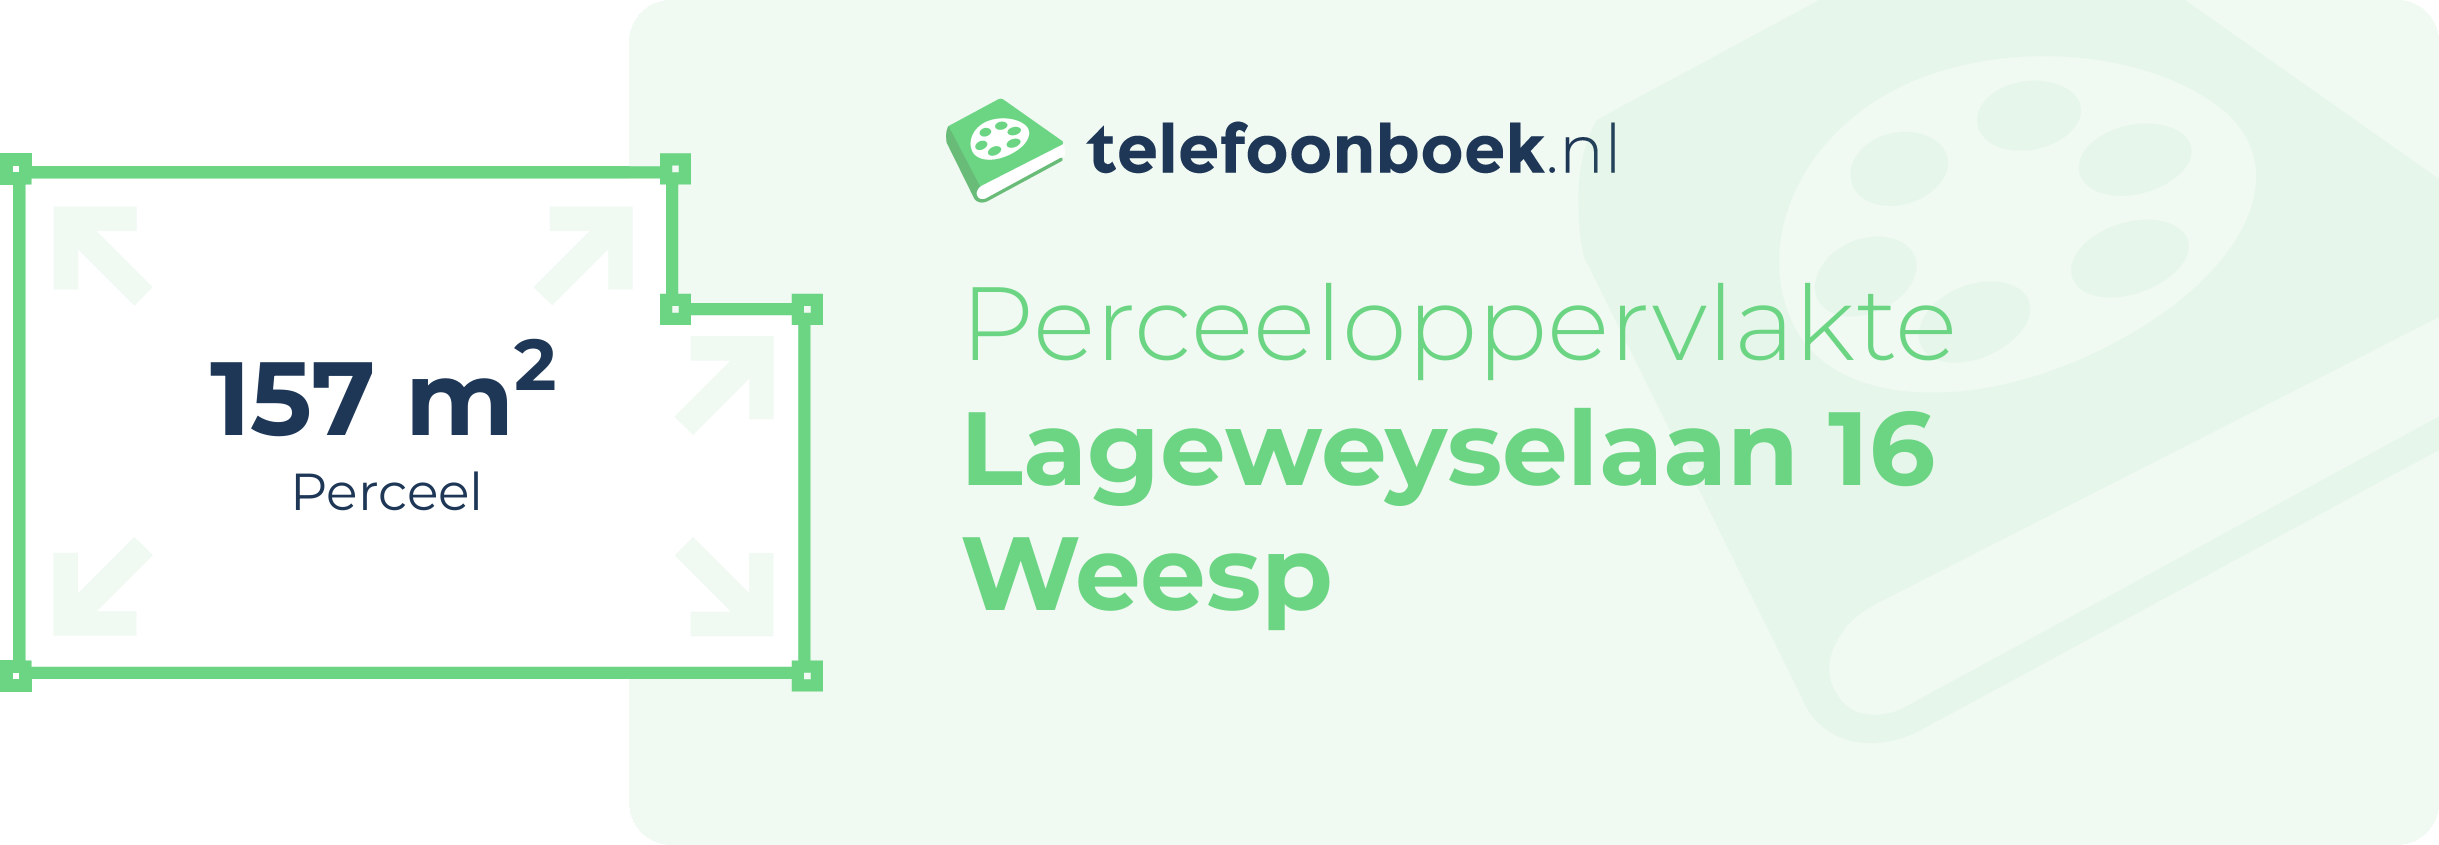 Perceeloppervlakte Lageweyselaan 16 Weesp